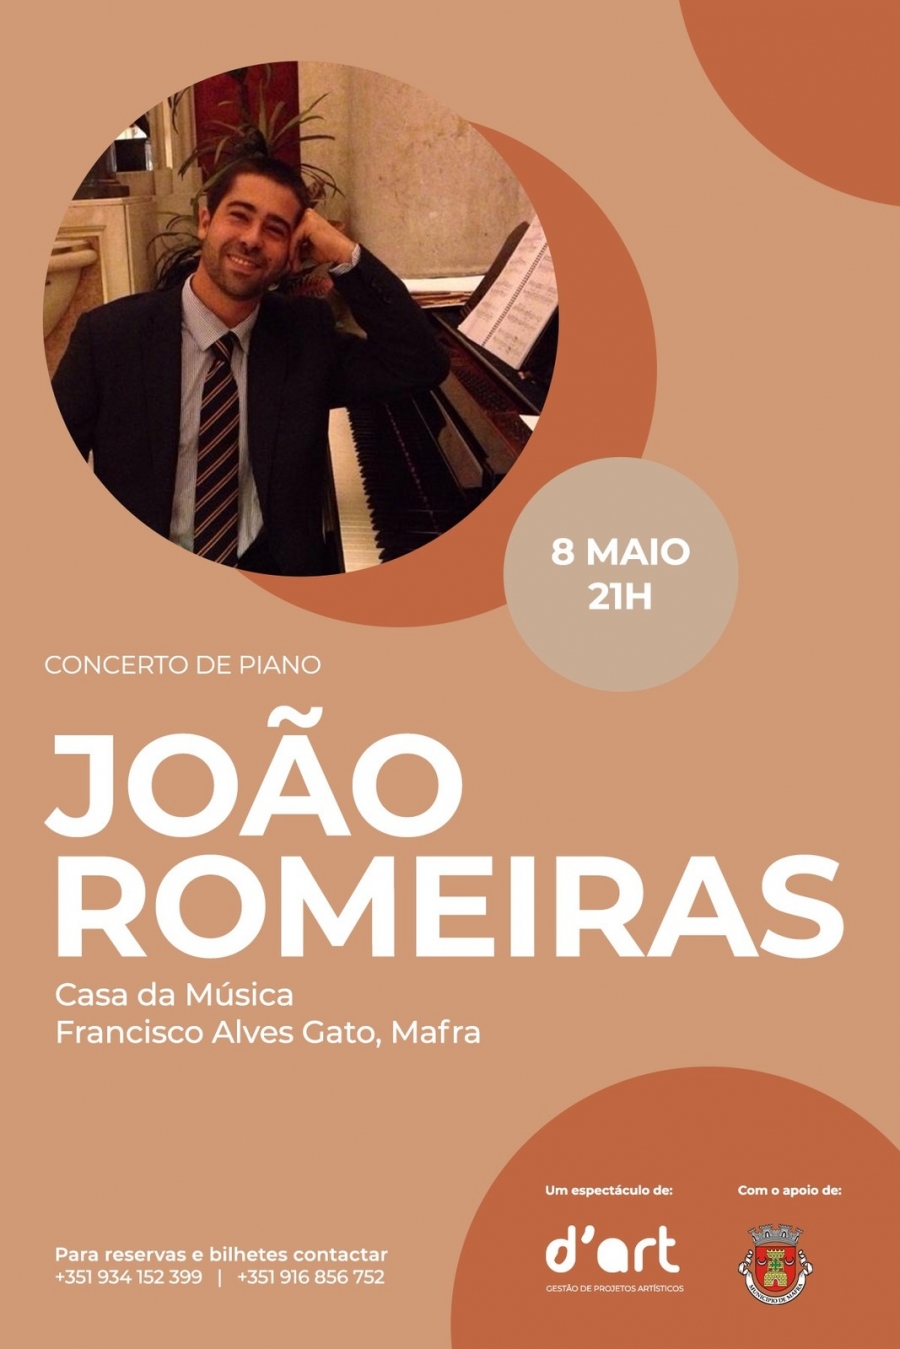 Concerto de Piano - João Romeiras